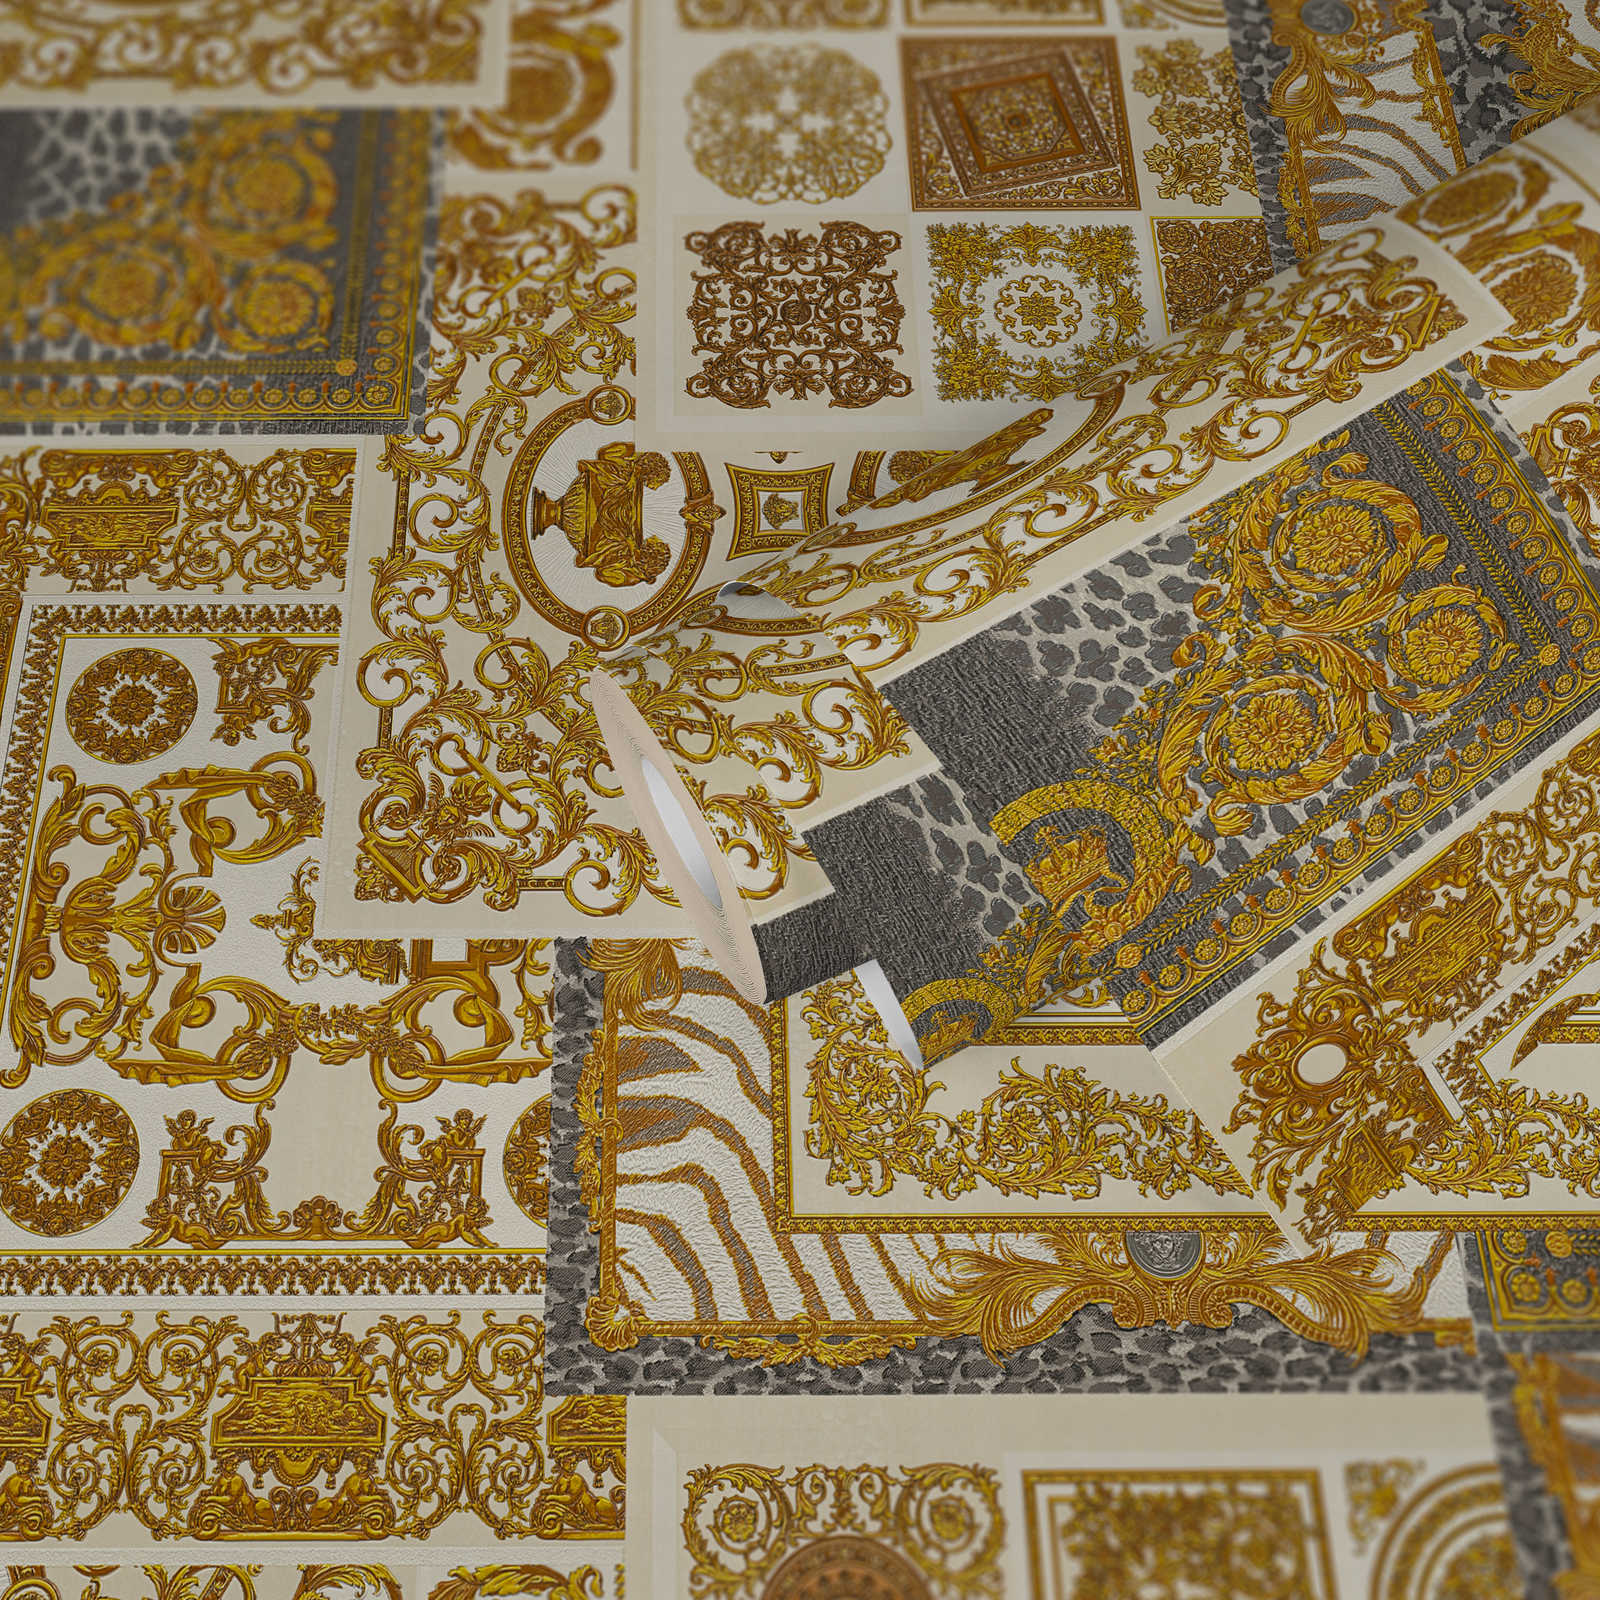             VERSACE Home behang barokke details & dierenprint - goud, zilver, crème
        